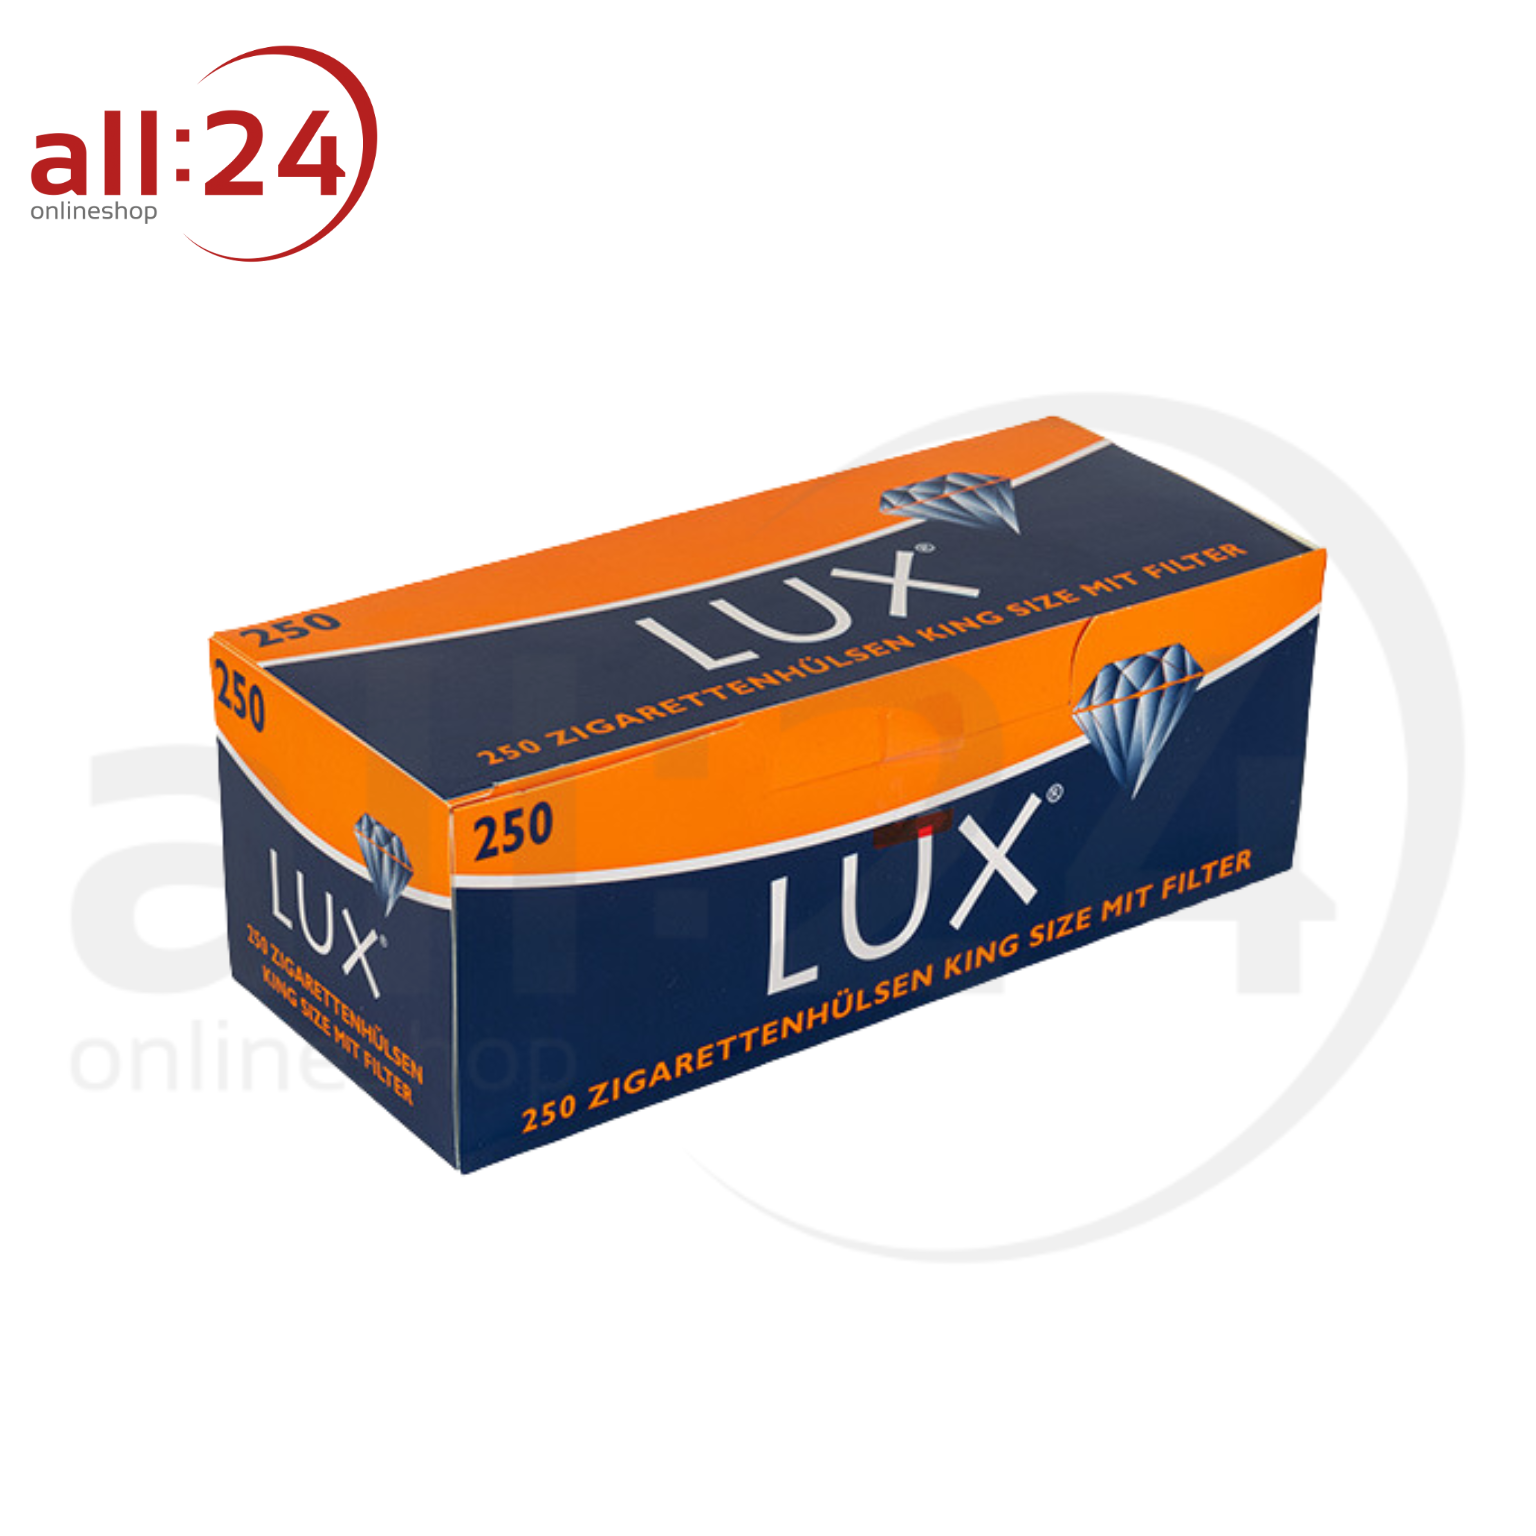 LUX Zigarettenhülsen - 10.000 Stück in 40 praktischen Packungen à 250 Stück 